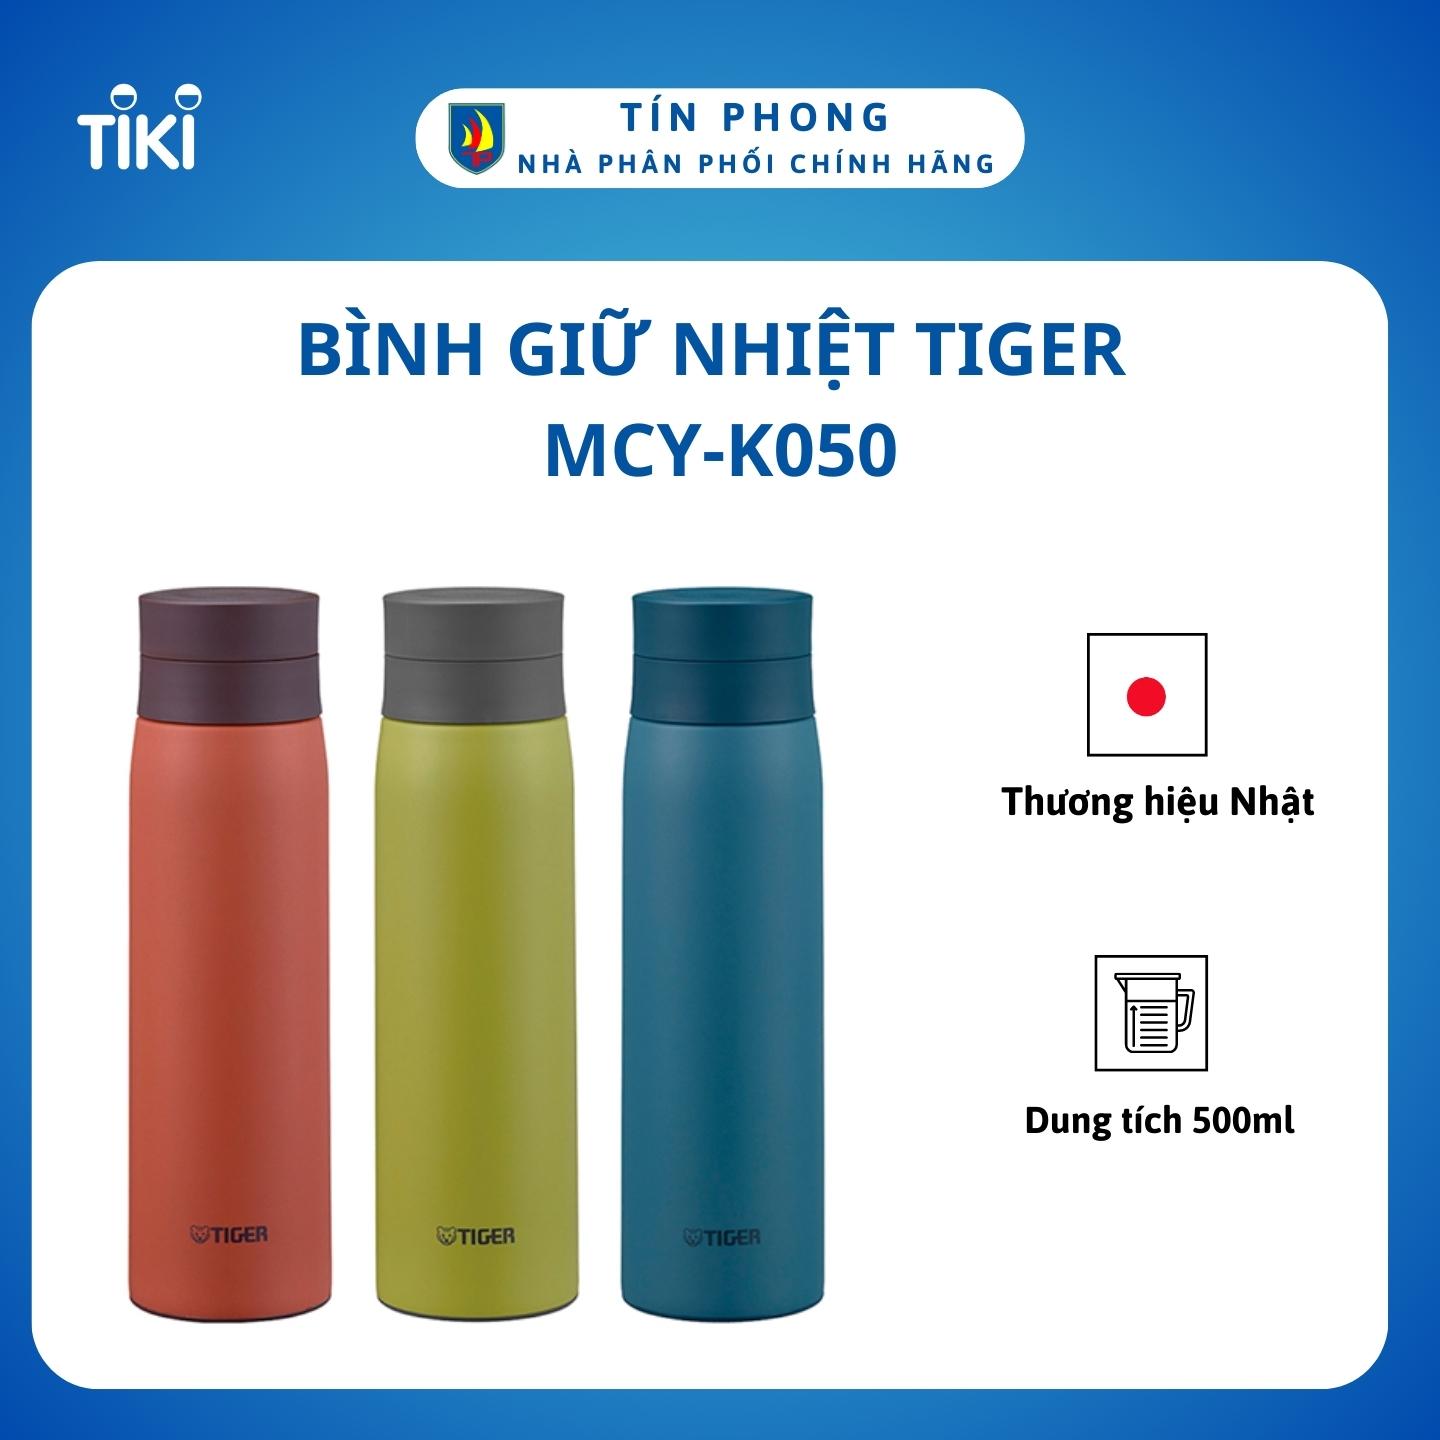 Bình giữ nhiệt Tiger MCY-K050 - Thương hiệu Nhật - 500ml - Giữ nhiệt độ Nóng - Lạnh - Hàng chính hãng